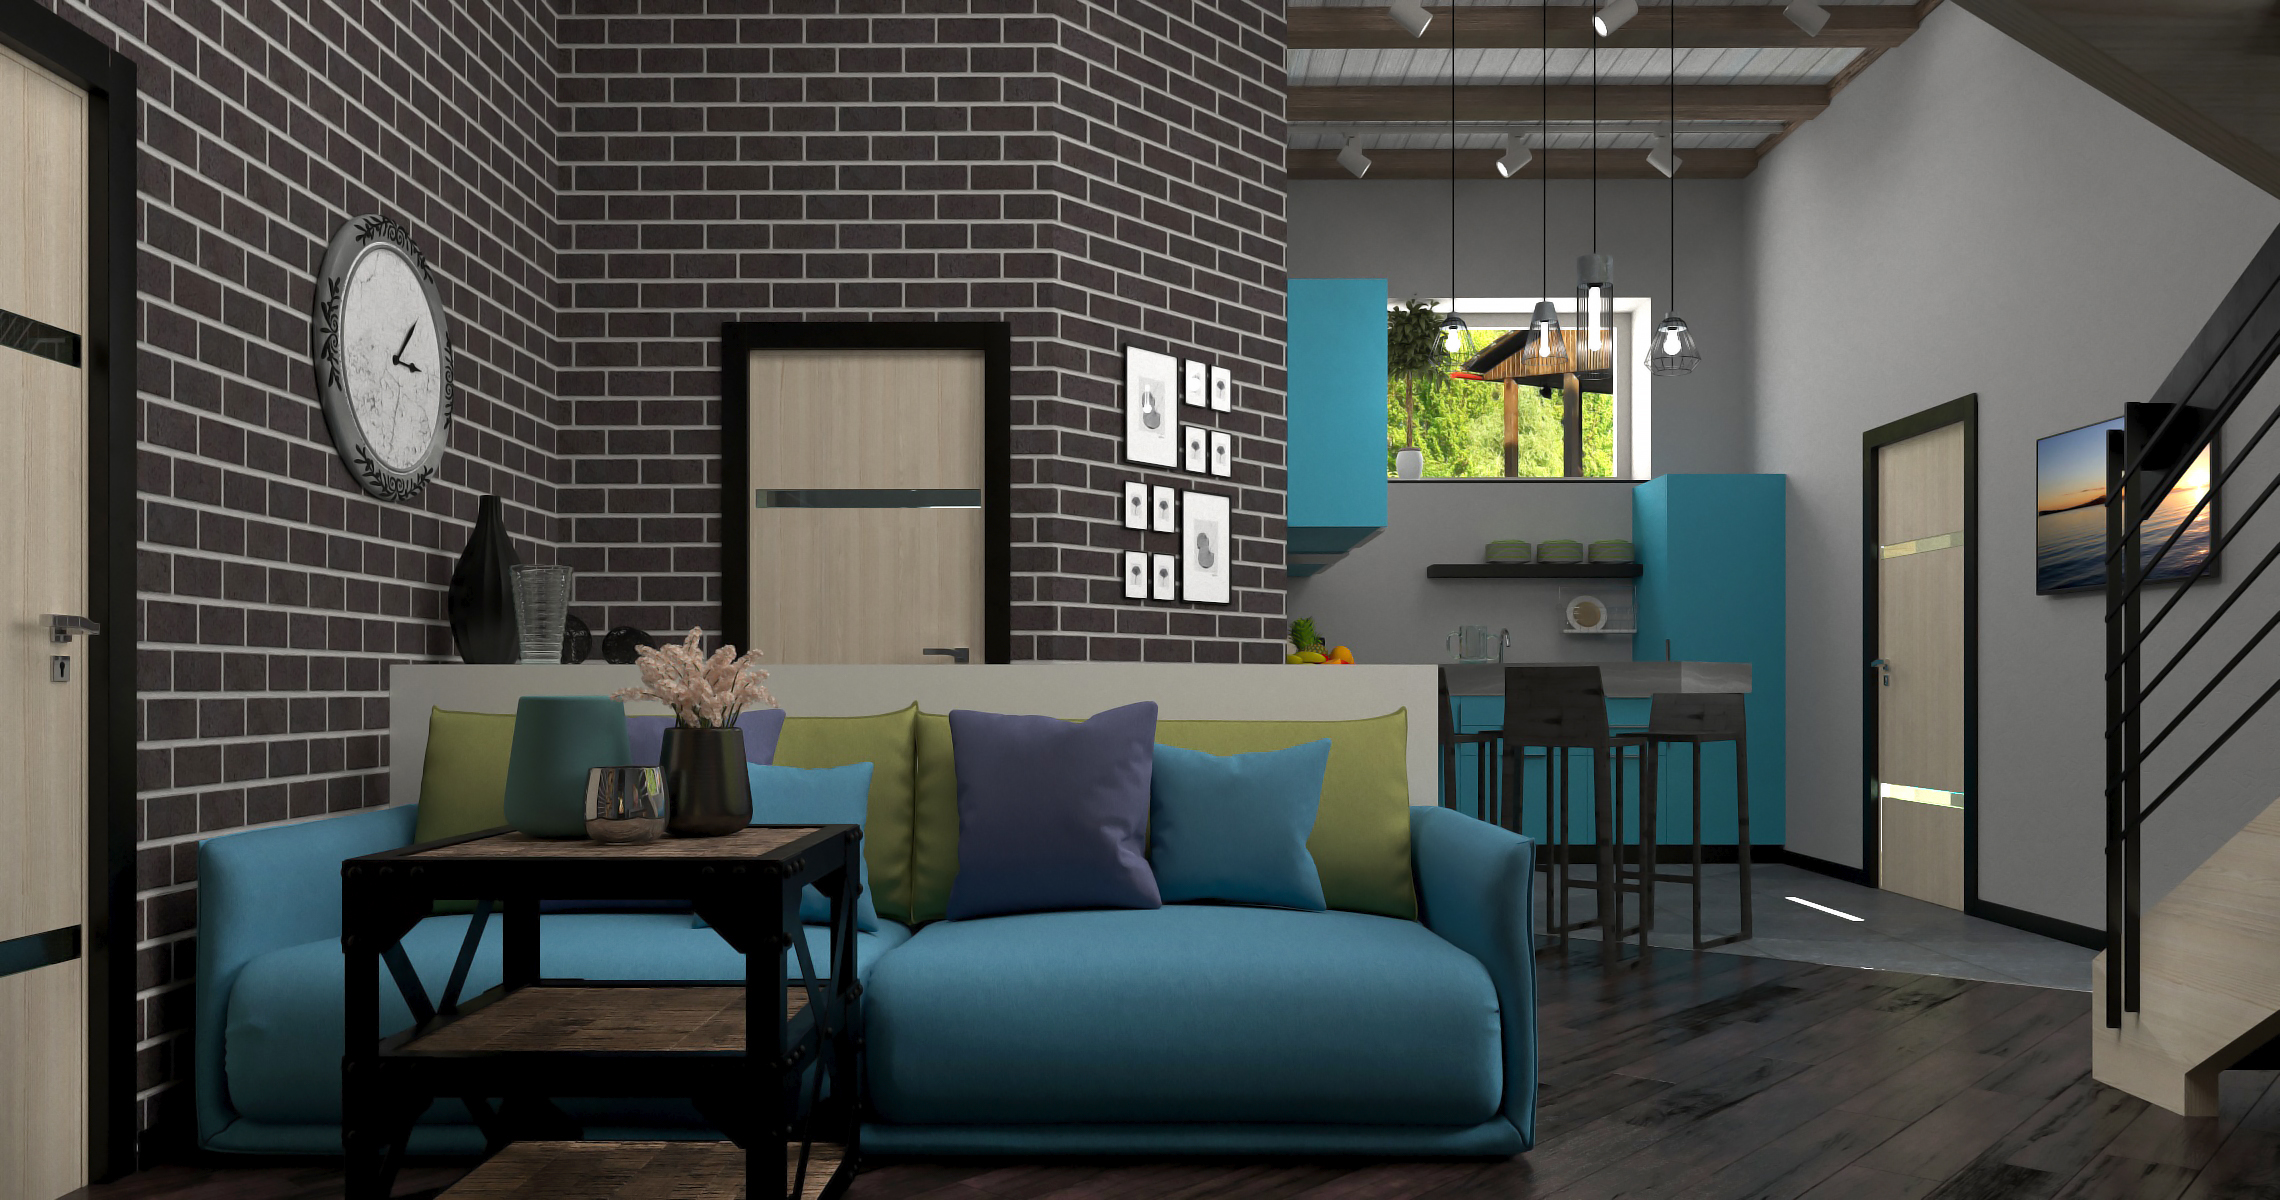 Interiore di una cucina-soggiorno in 3d max corona render immagine